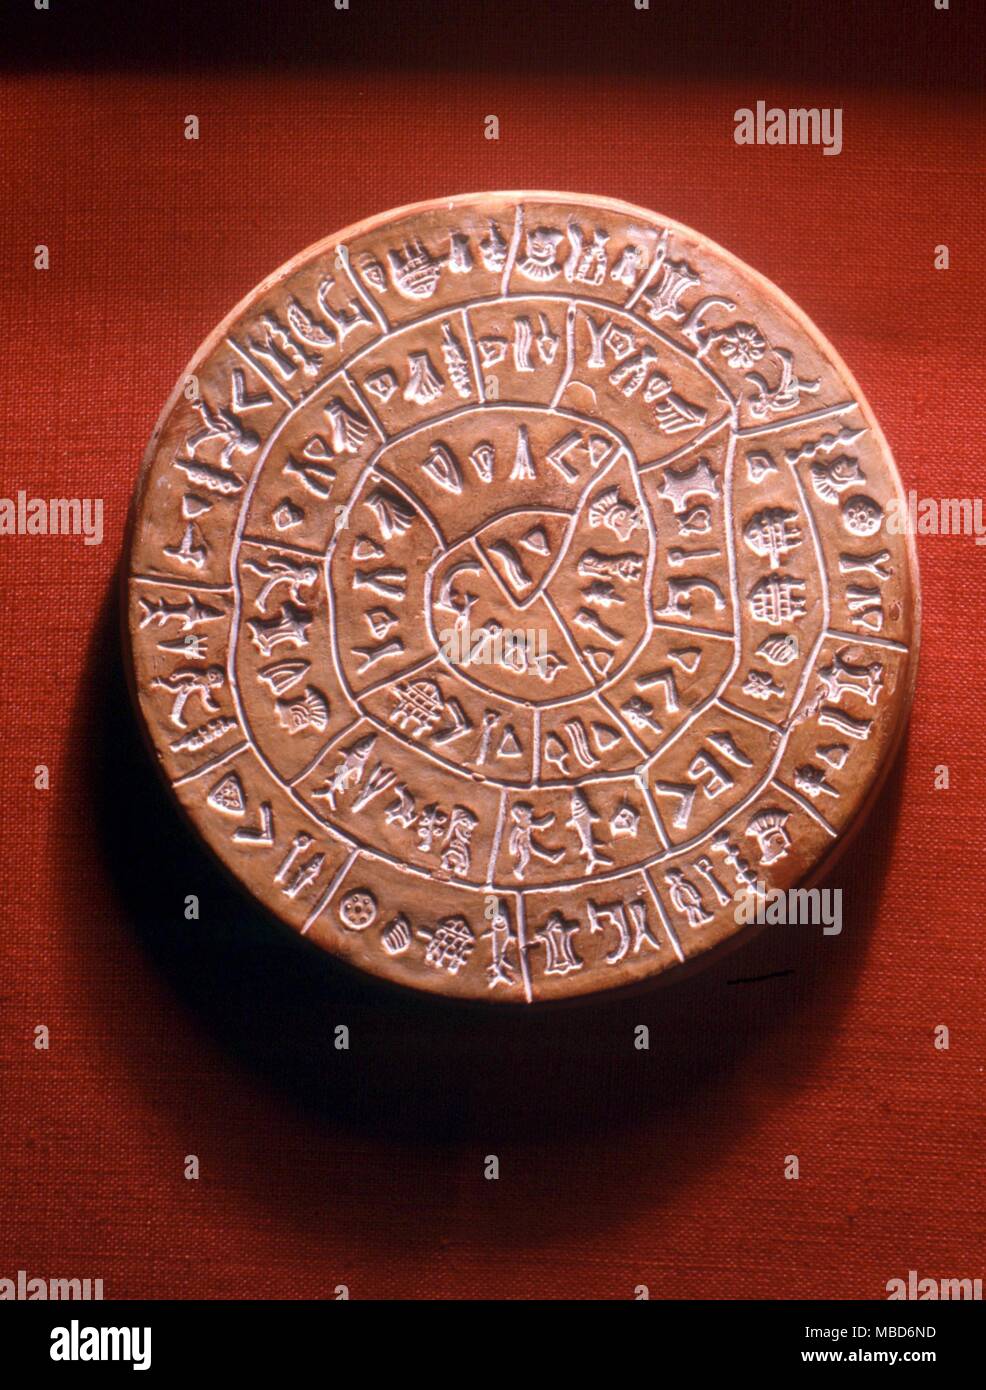 ALPHABETS - Le disque de Phaistos - un unique disque d'argile de l'ancienne ville de Crète de Phaistos. Cette spirale de caractères alphabétiques ou pictogrammes, qui n'ont jamais été interprété, est une copie de l'argile que dans le Musée Györ Banque D'Images